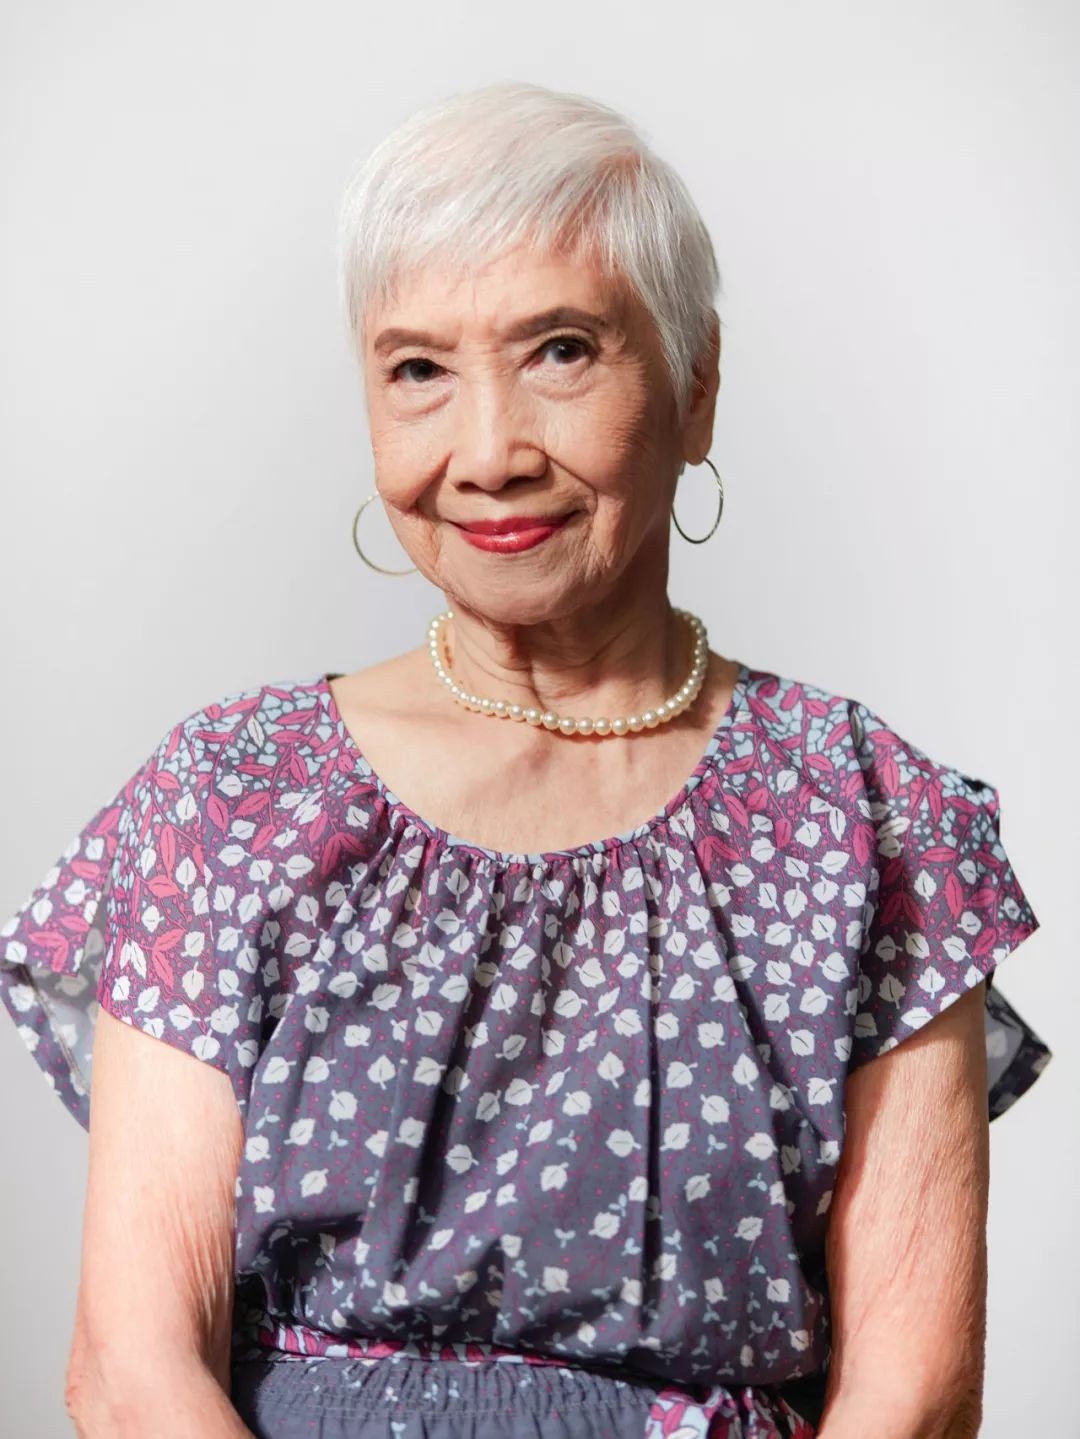 “Bà ngoại gân&quot; nhất Hong Kong: 96 tuổi trở thành người mẫu nổi tiếng được nhiều thương hiệu săn đón và cách sống “hãy là chính mình” đáng học hỏi - Ảnh 11.